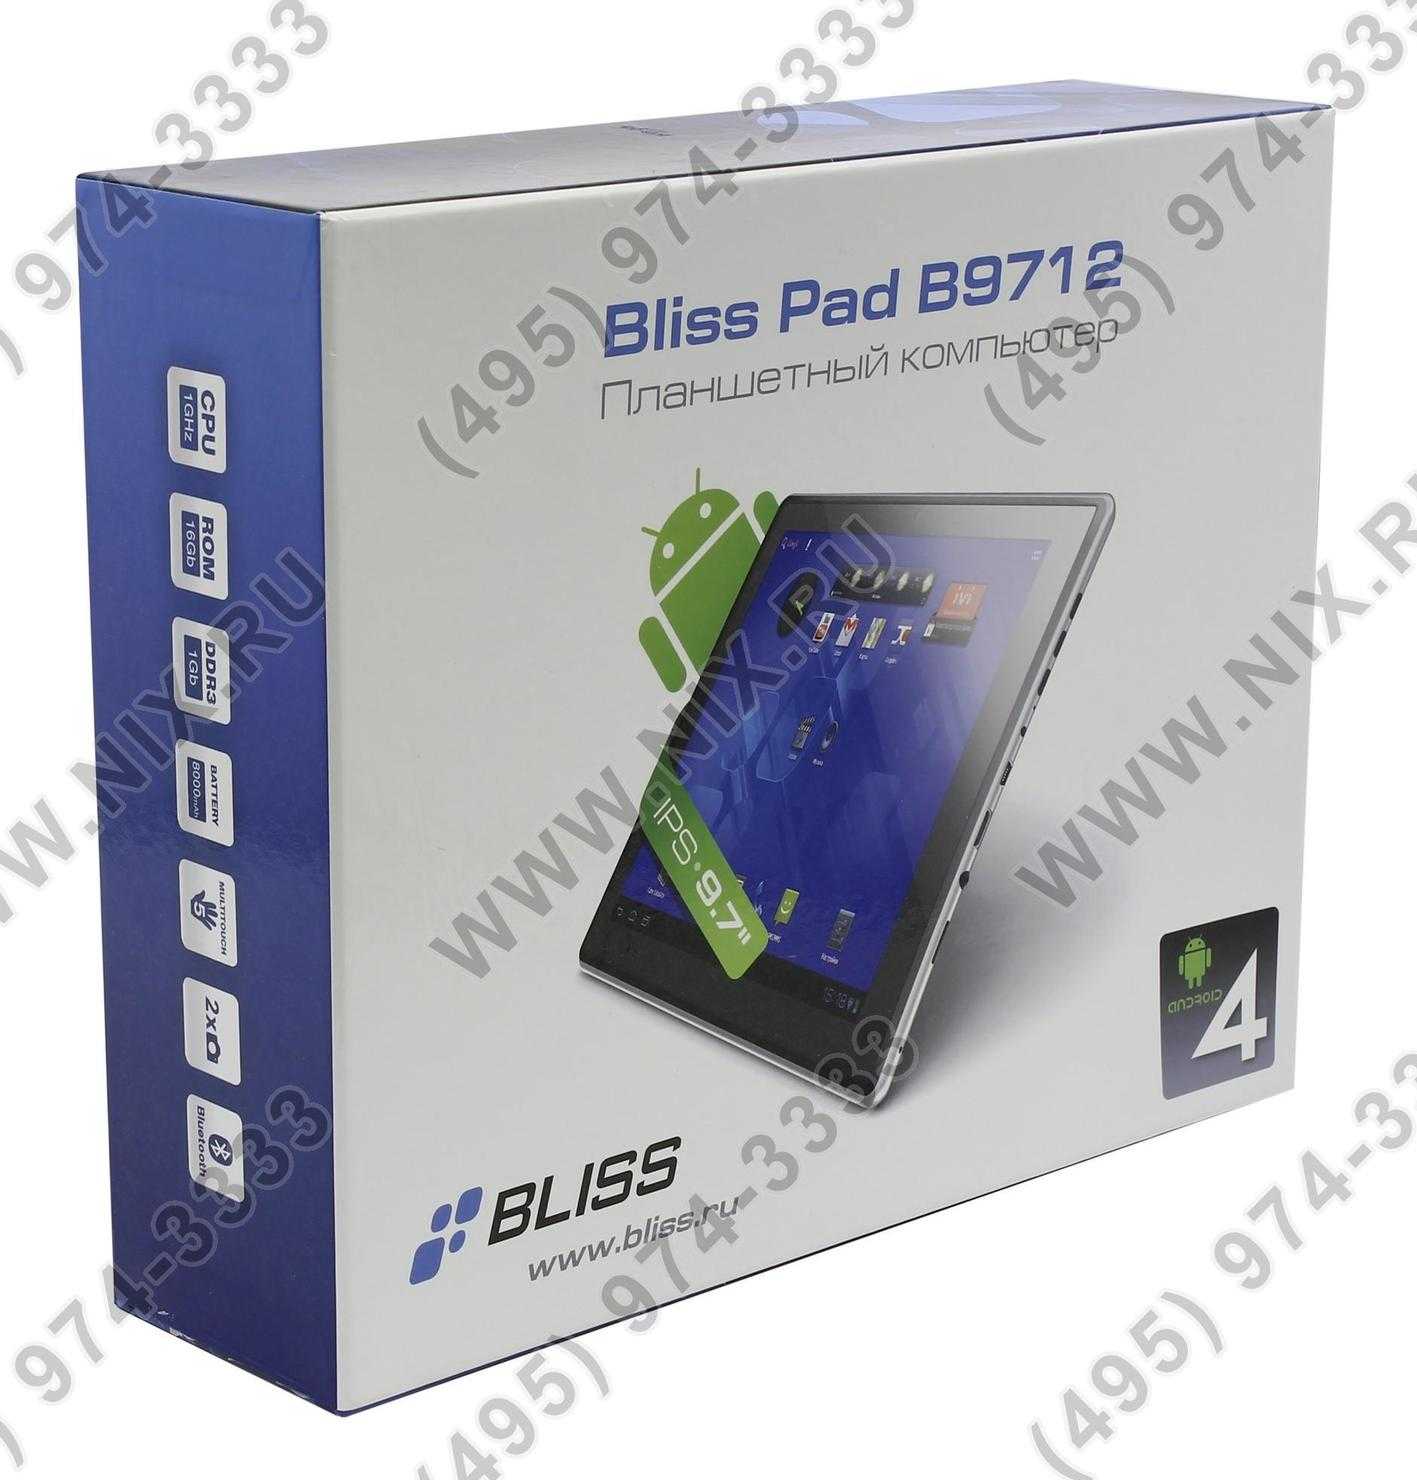 Планшет bliss pad r9020 — купить, цена и характеристики, отзывы